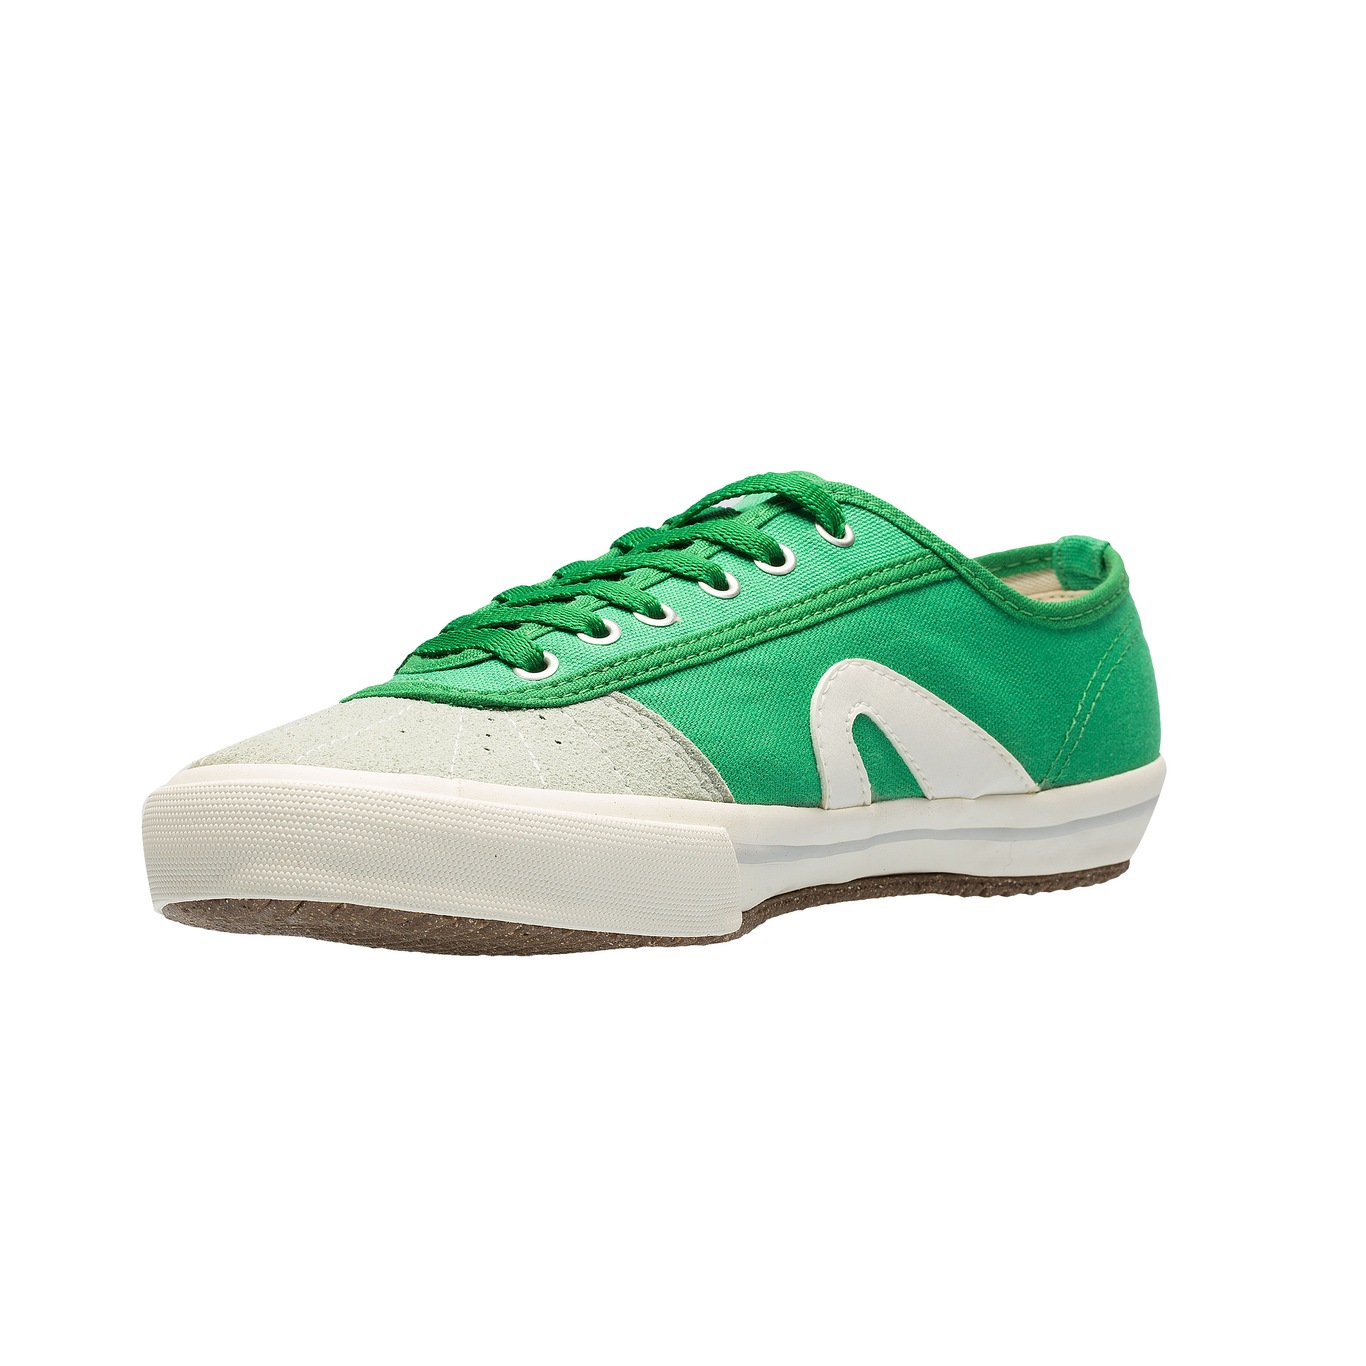 Rainha VL2500 Eco - Capoeira Shoes - Green